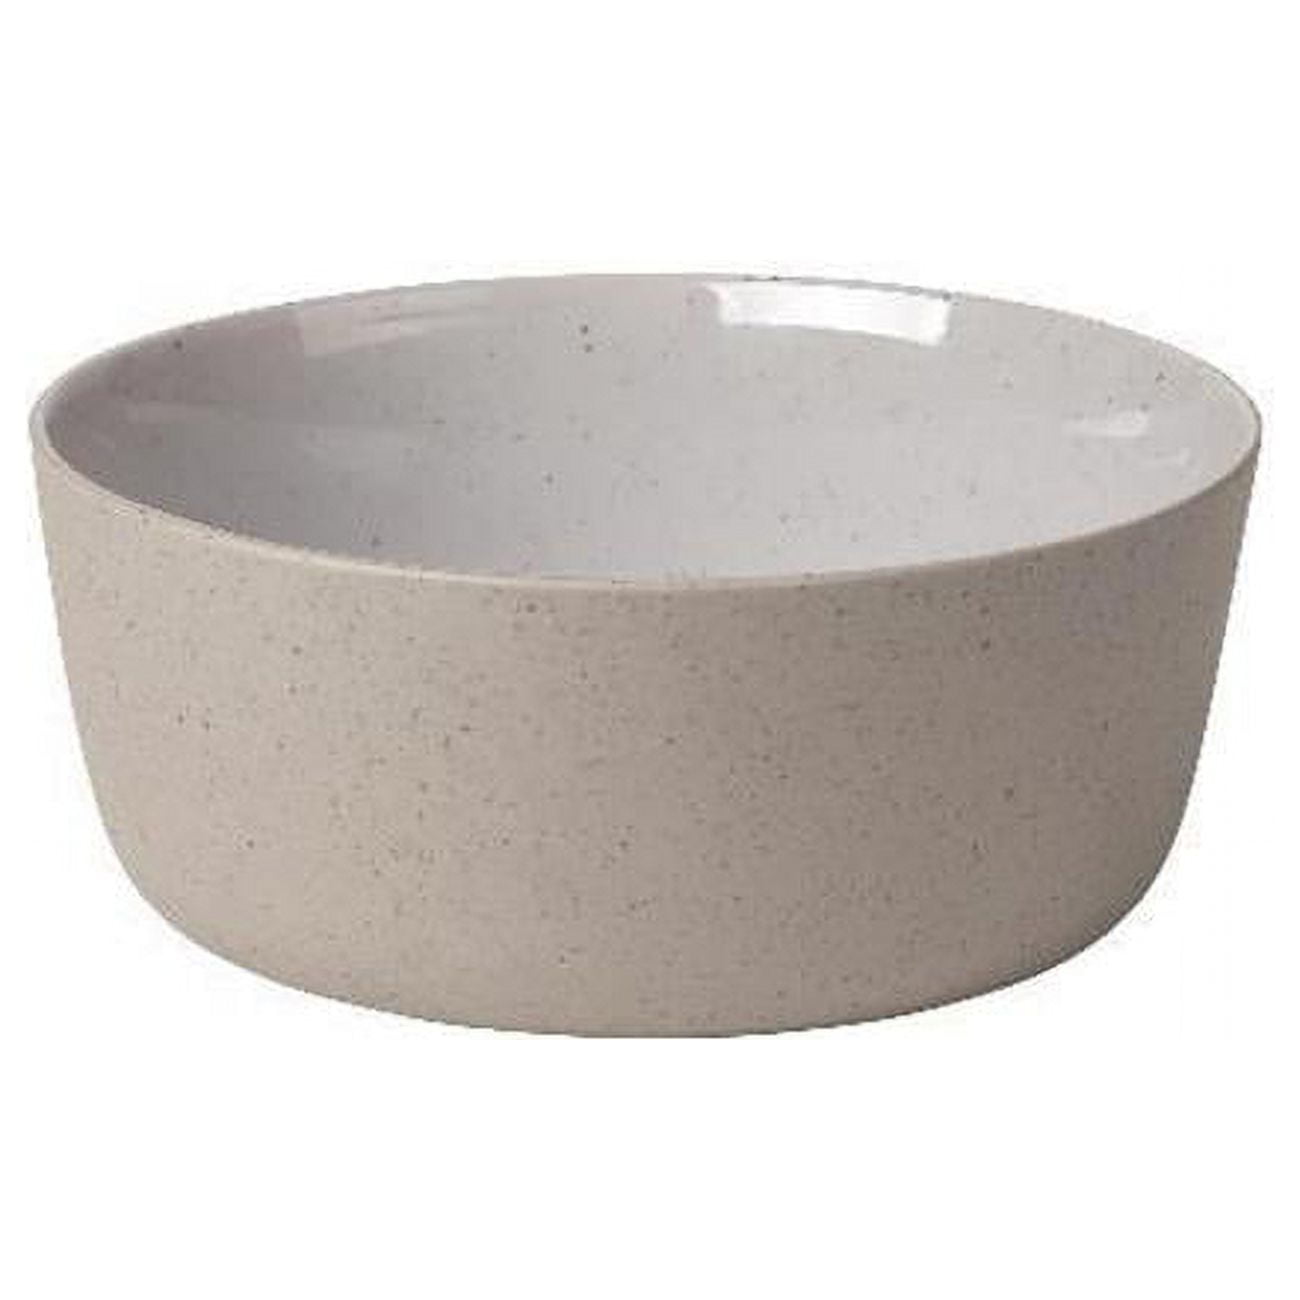 Picture of Blomus 64104.4 6.1 in. Sablo Ceramic Stoneware Bowl, Medium - Set of 4